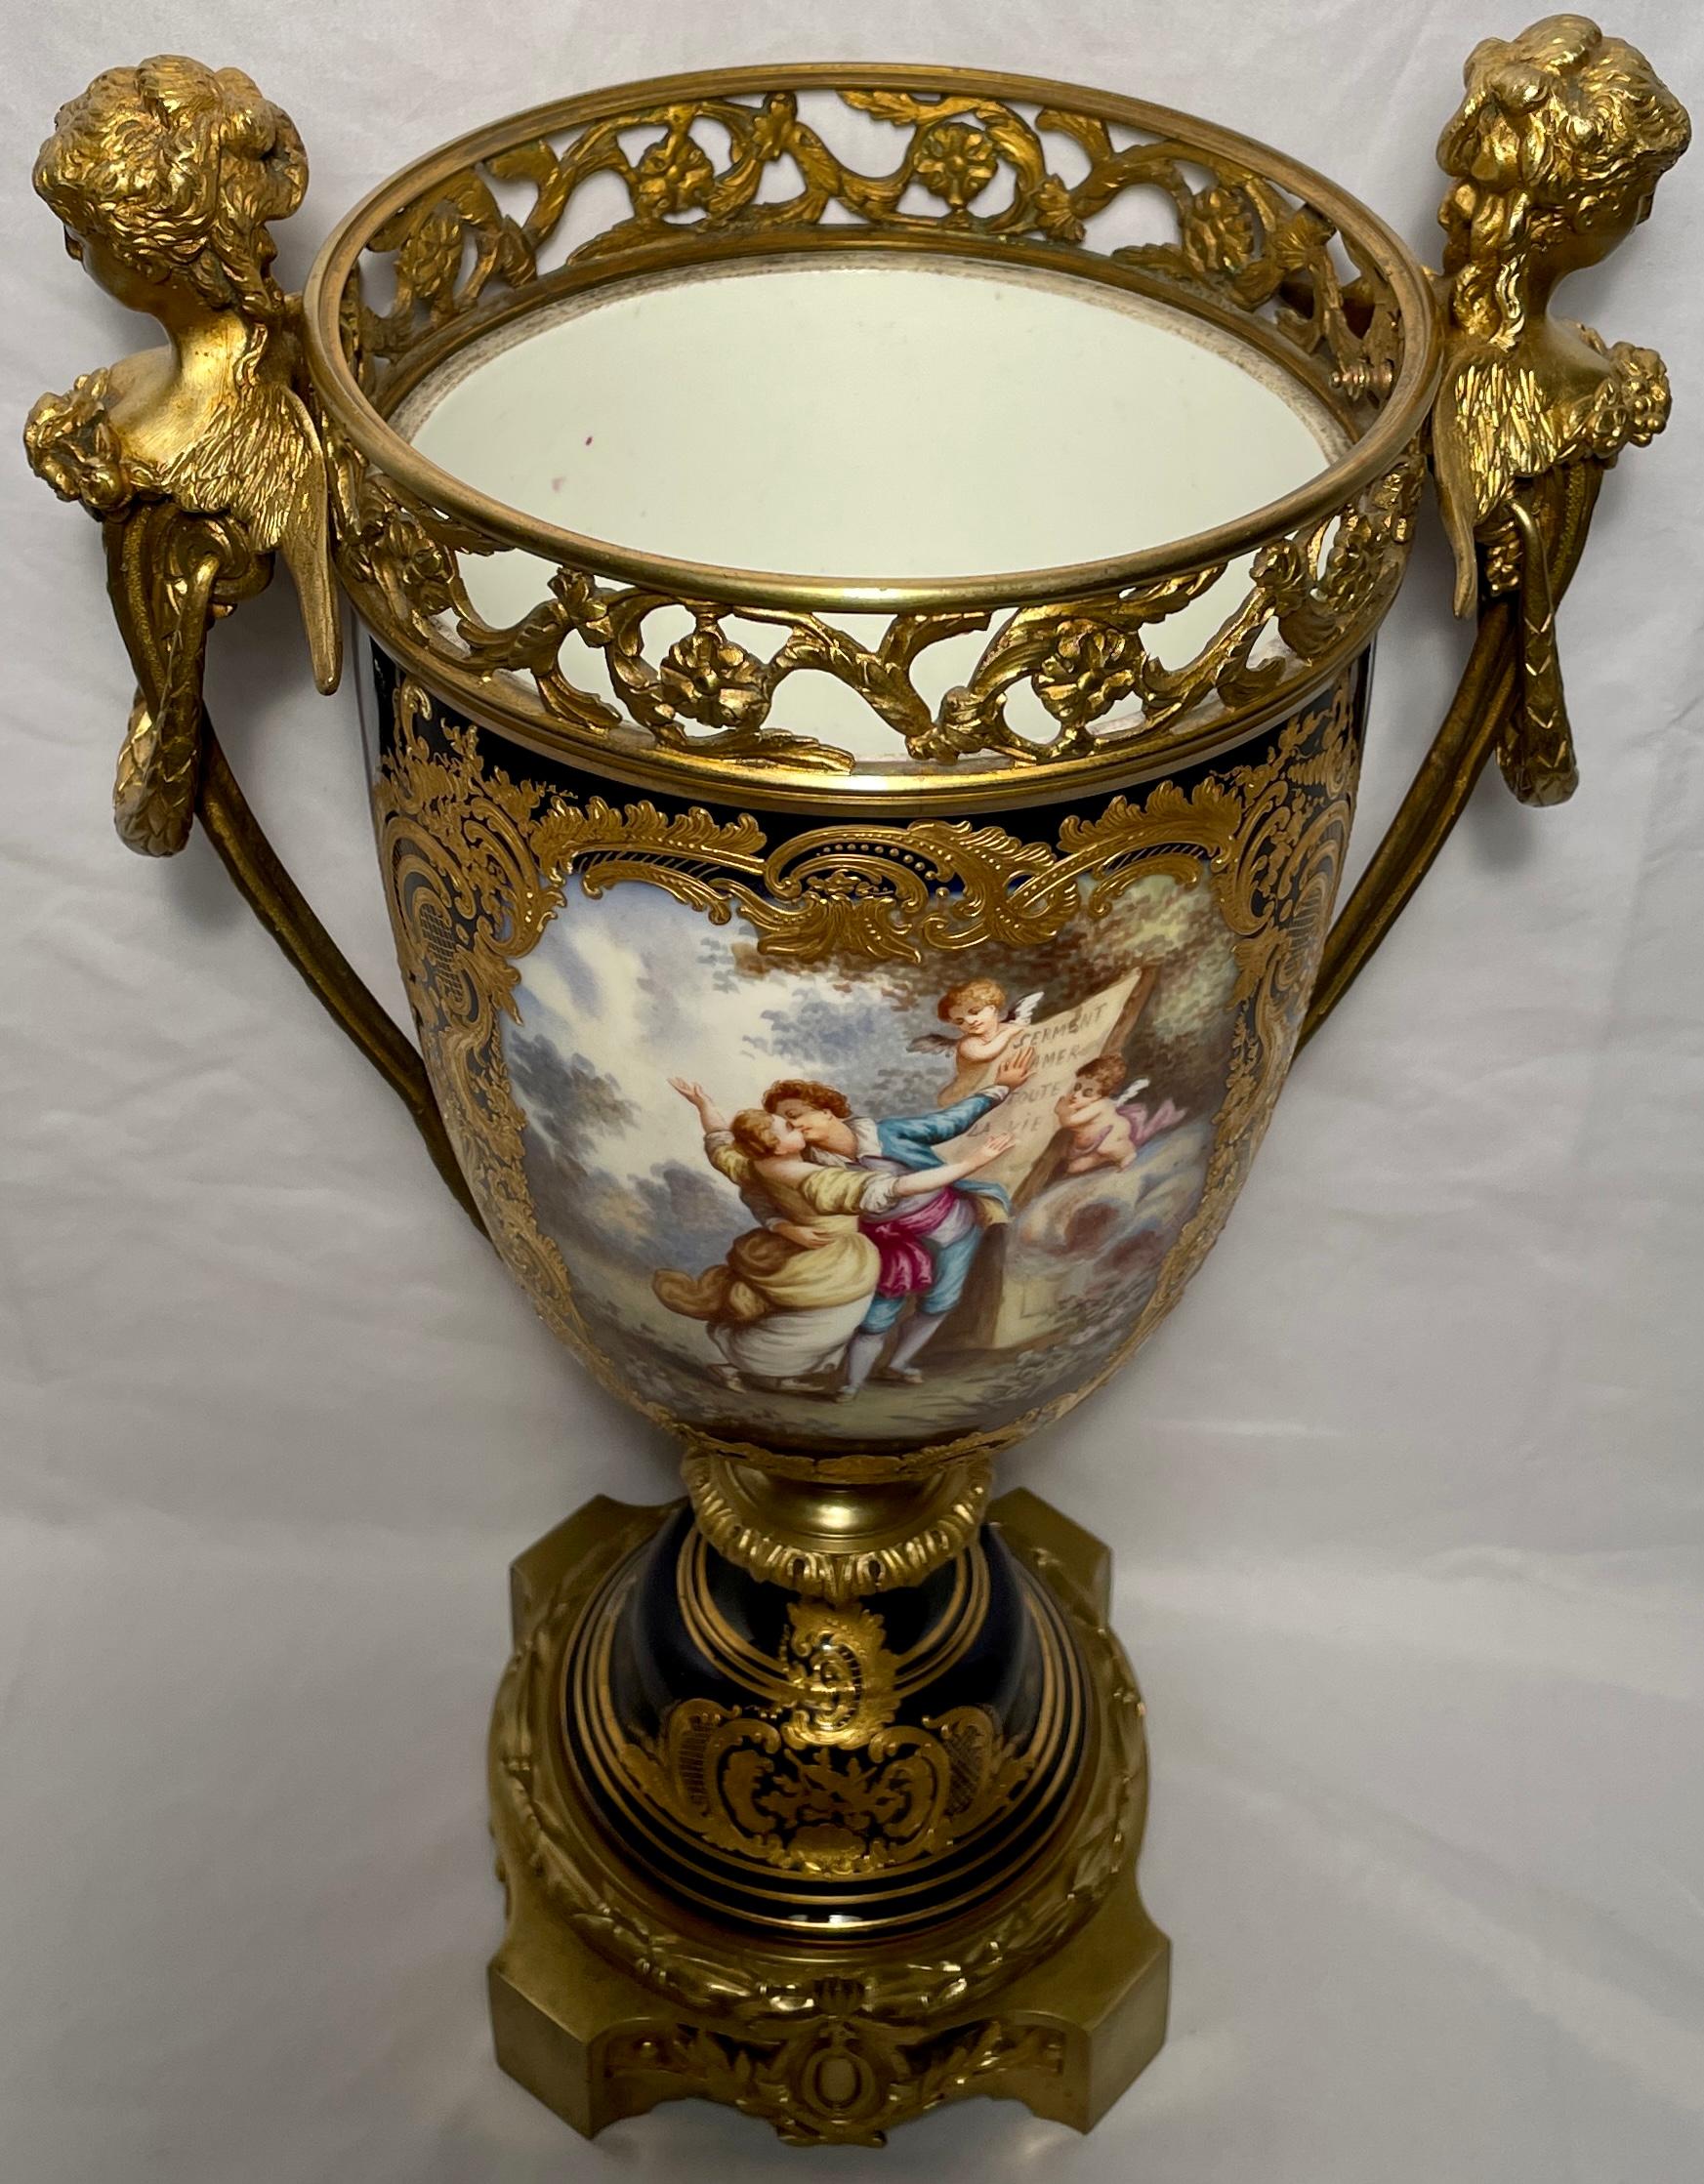 Antique French hand-painted cobalt blue & gold Sèvres porcelain vase, Circa 1860-1880.
 